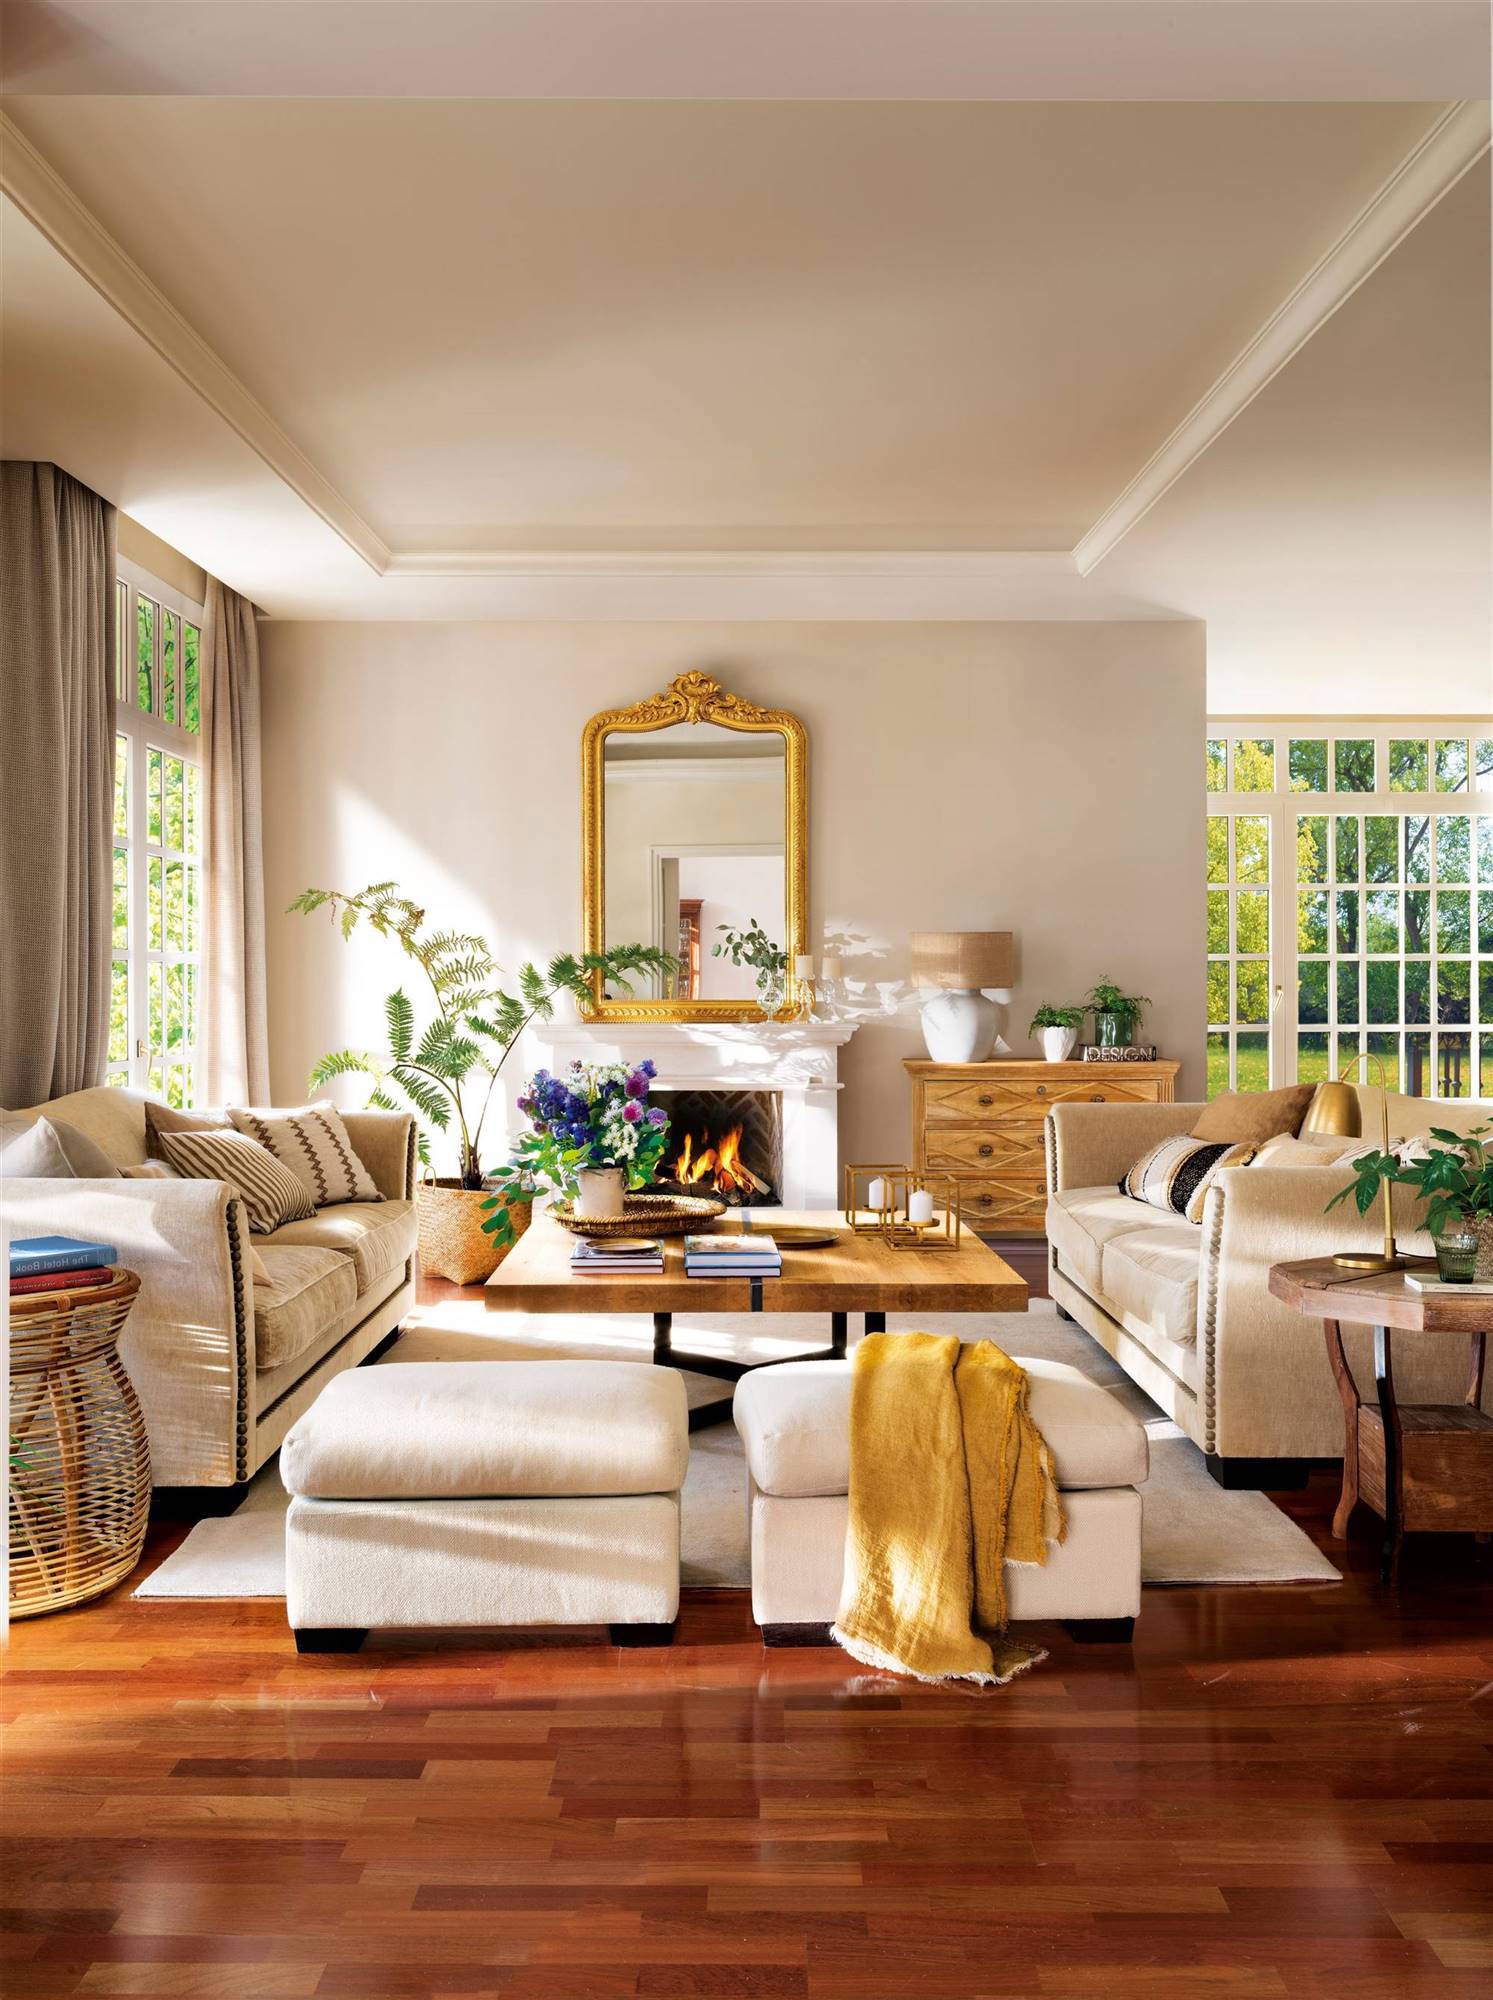 Salón con chimenea y espejo dorado, sofás blancos y suelo de madera oscuro.